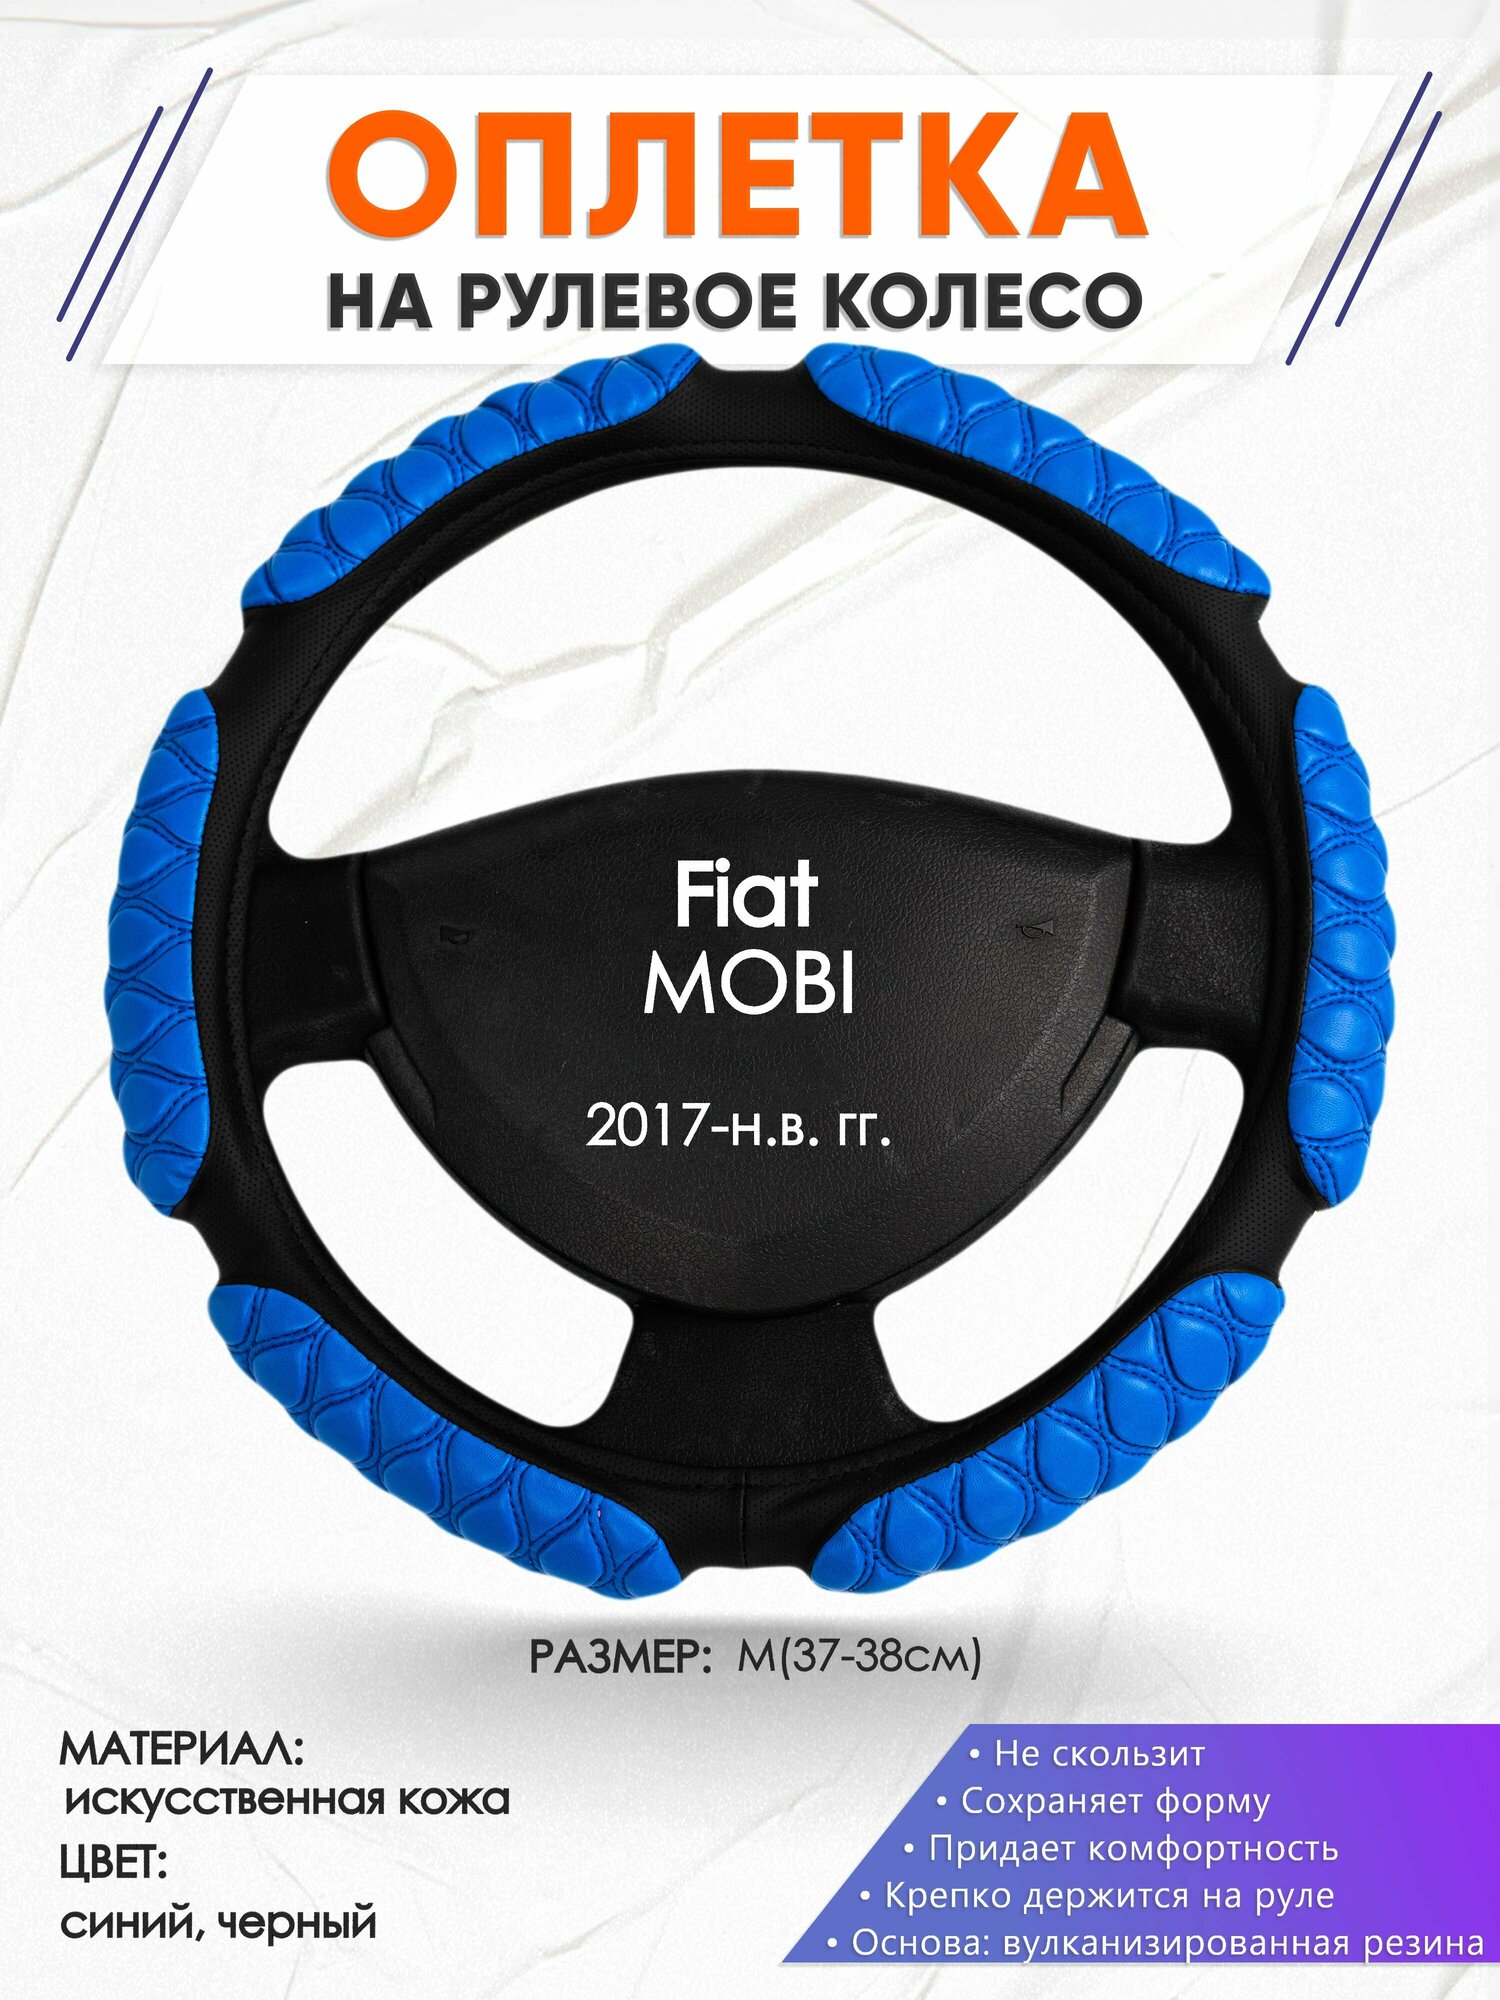 Оплетка наруль для Fiat MOBI(Фиат Моби) 2017-н. в. годов выпуска, размер M(37-38см), Искусственная кожа 02